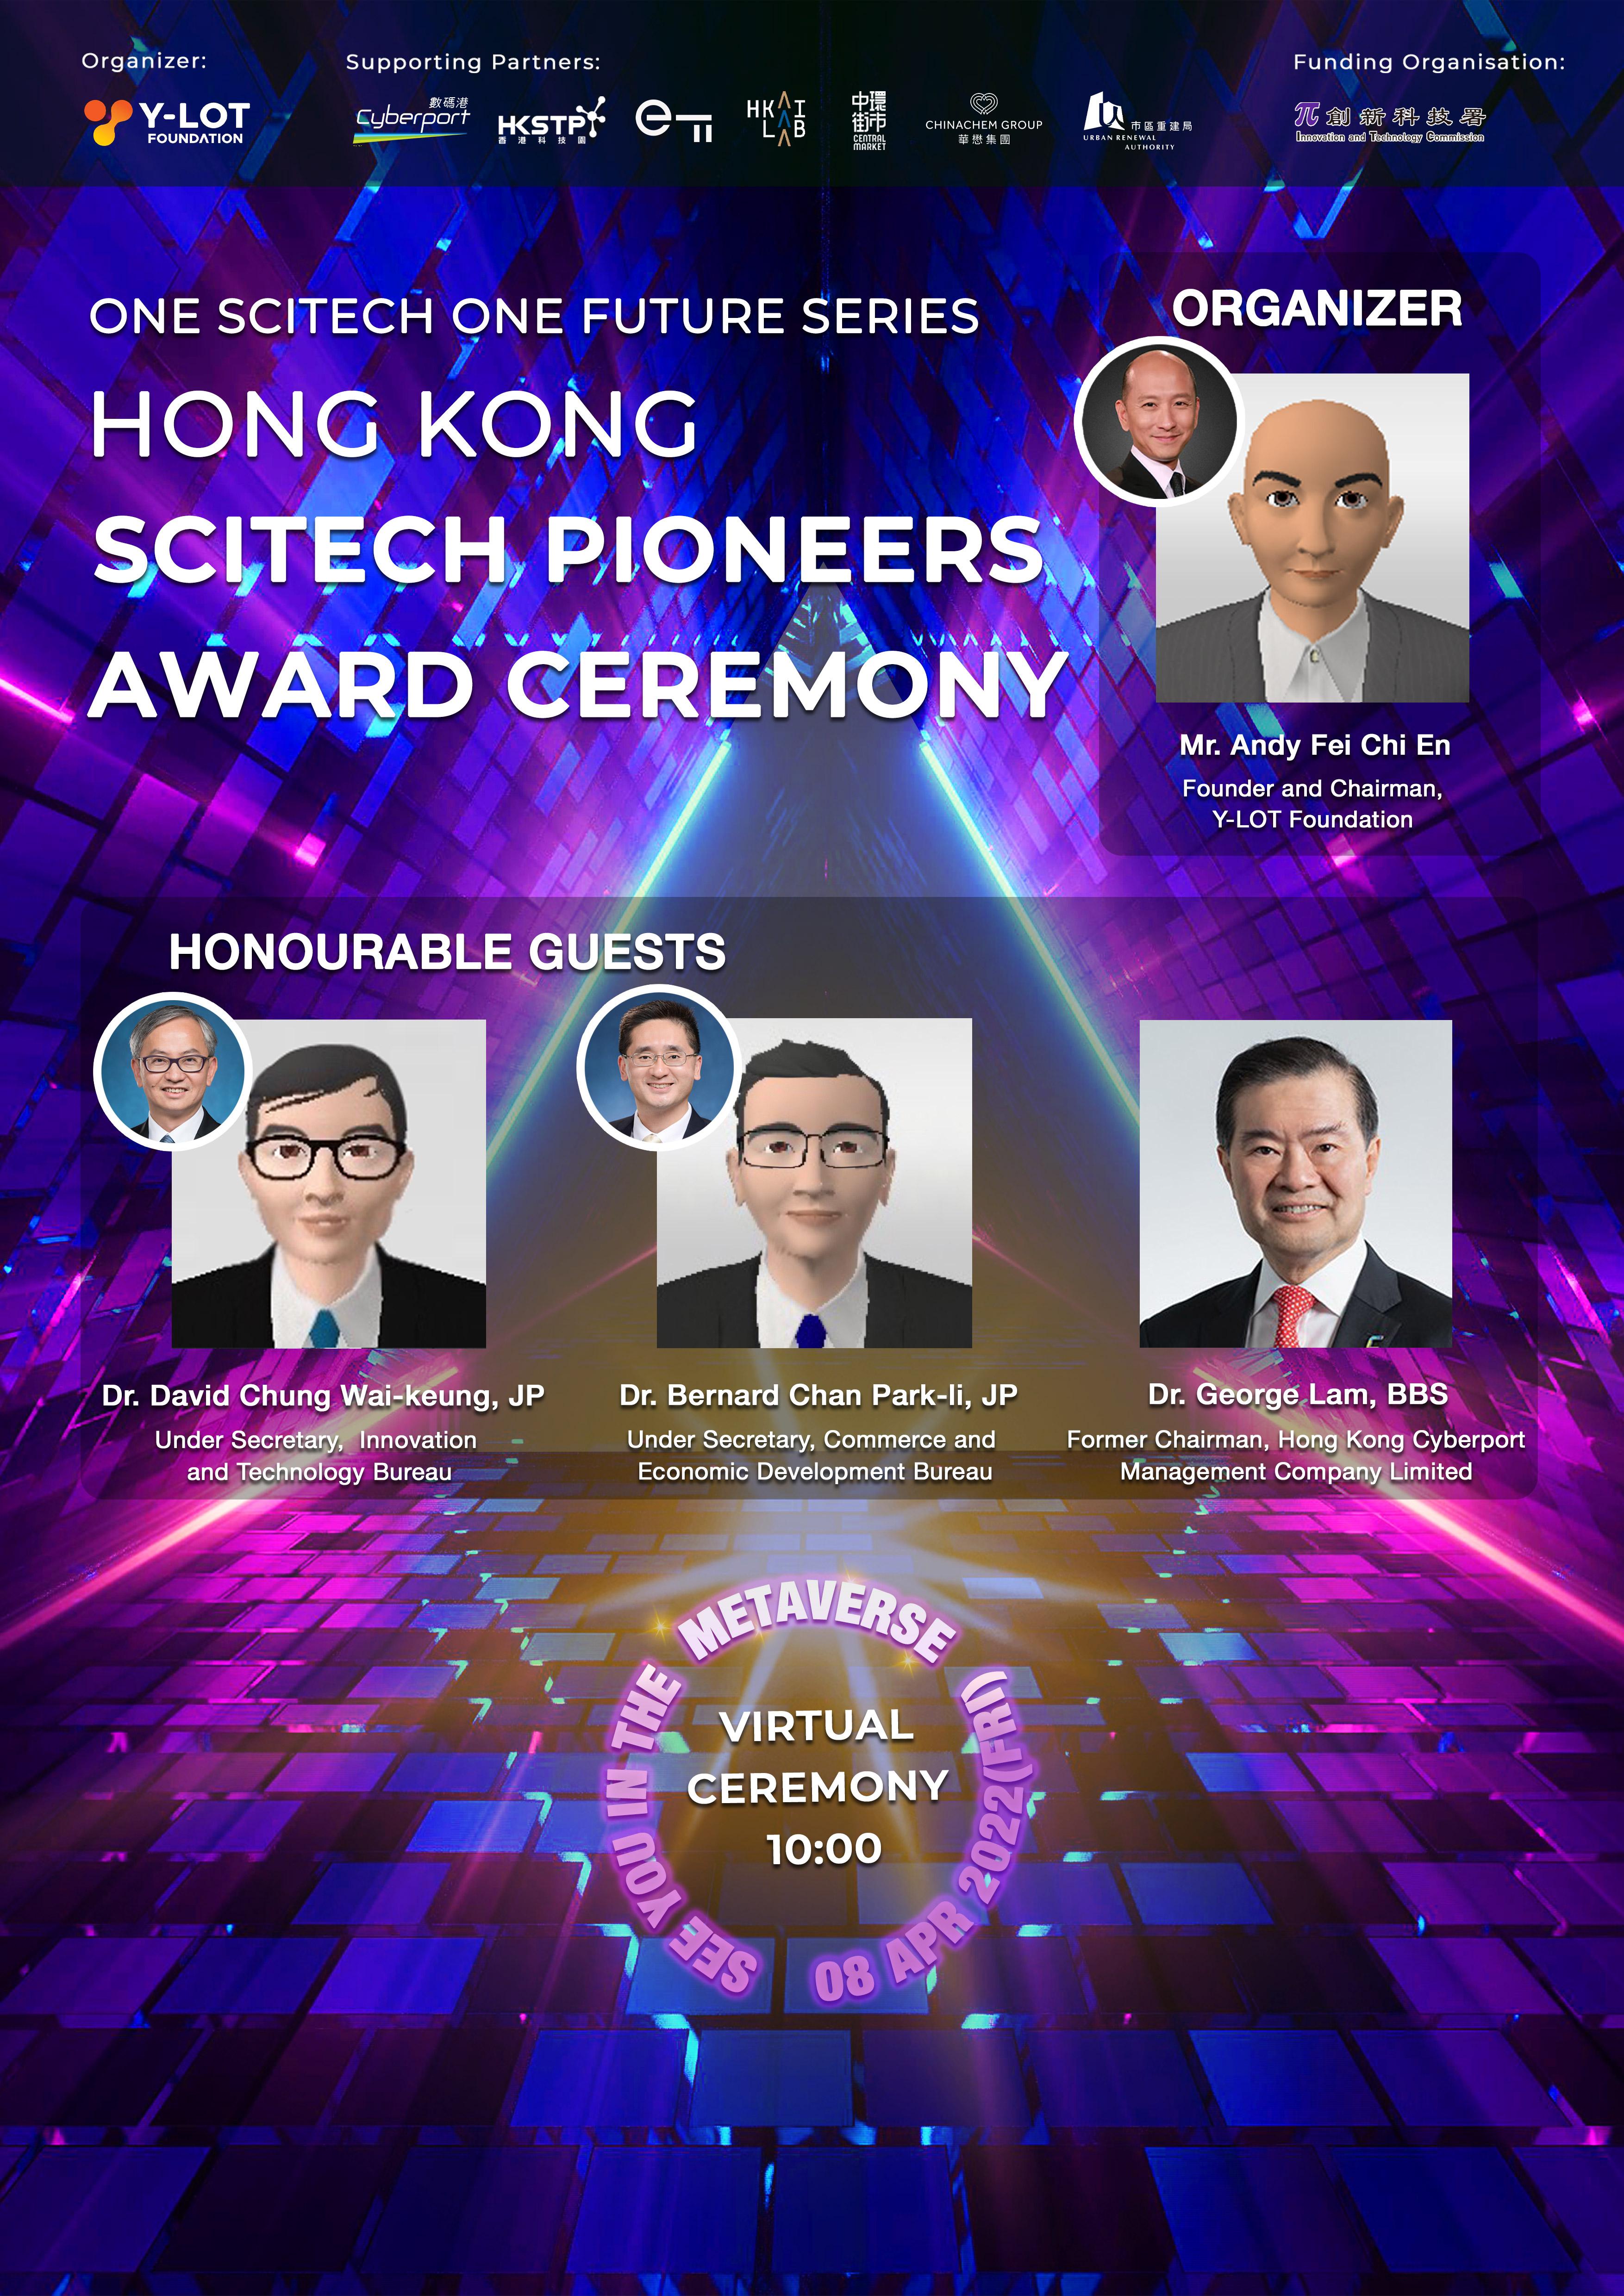 香港首個元宇宙頒獎典禮成功舉辦 Y-LOT 表彰香港創科研青年人才